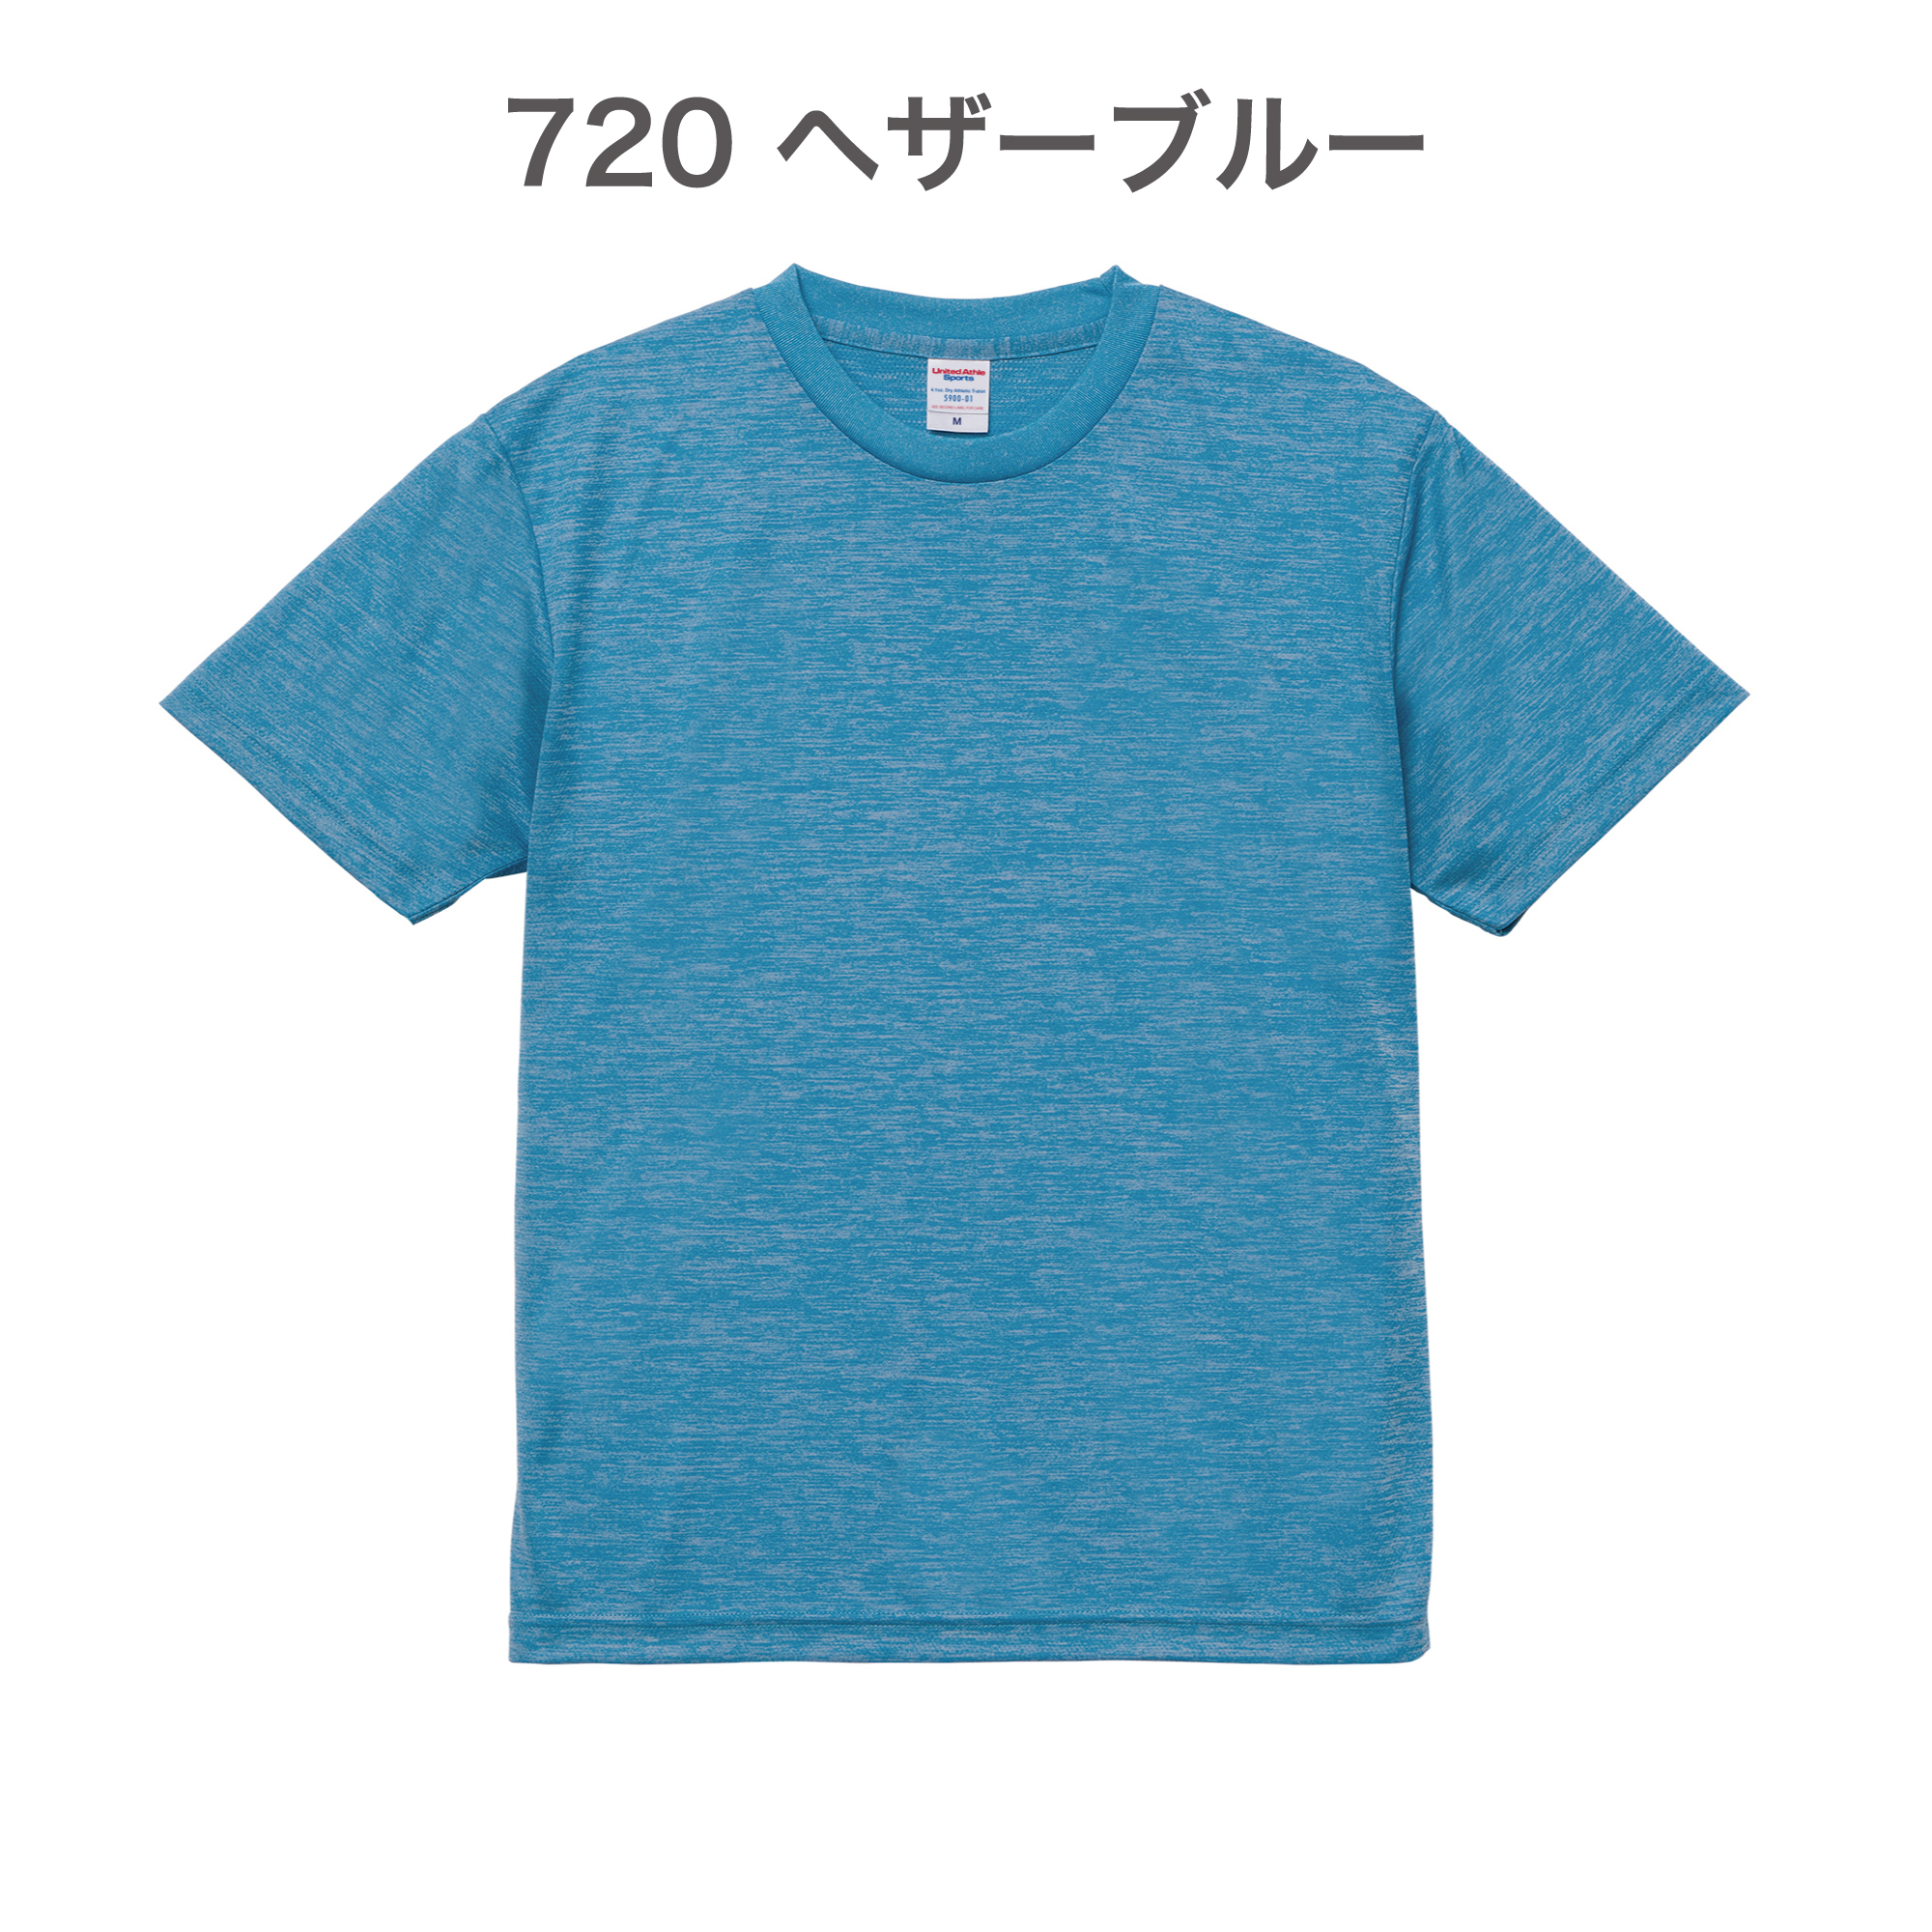 720-ヘザーブルー